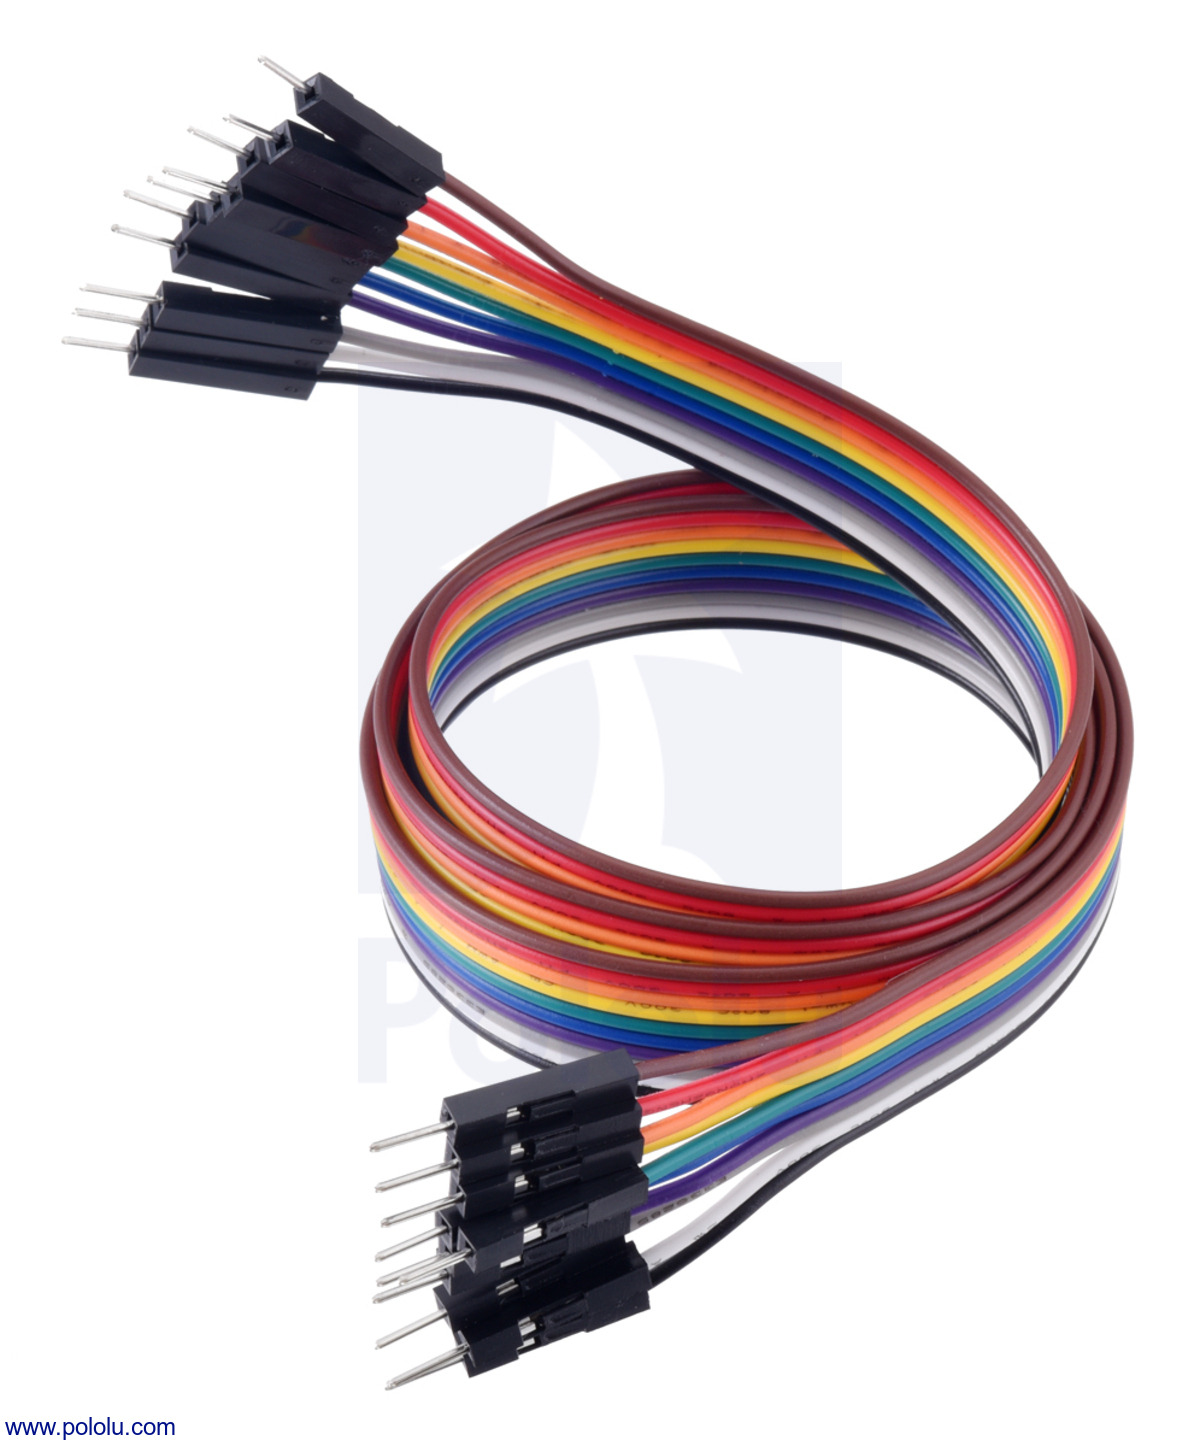 STR® 3 en 1 40P 20cm Dupont Wire Jumper Cable 2.54 1P-1P mâle-mâle